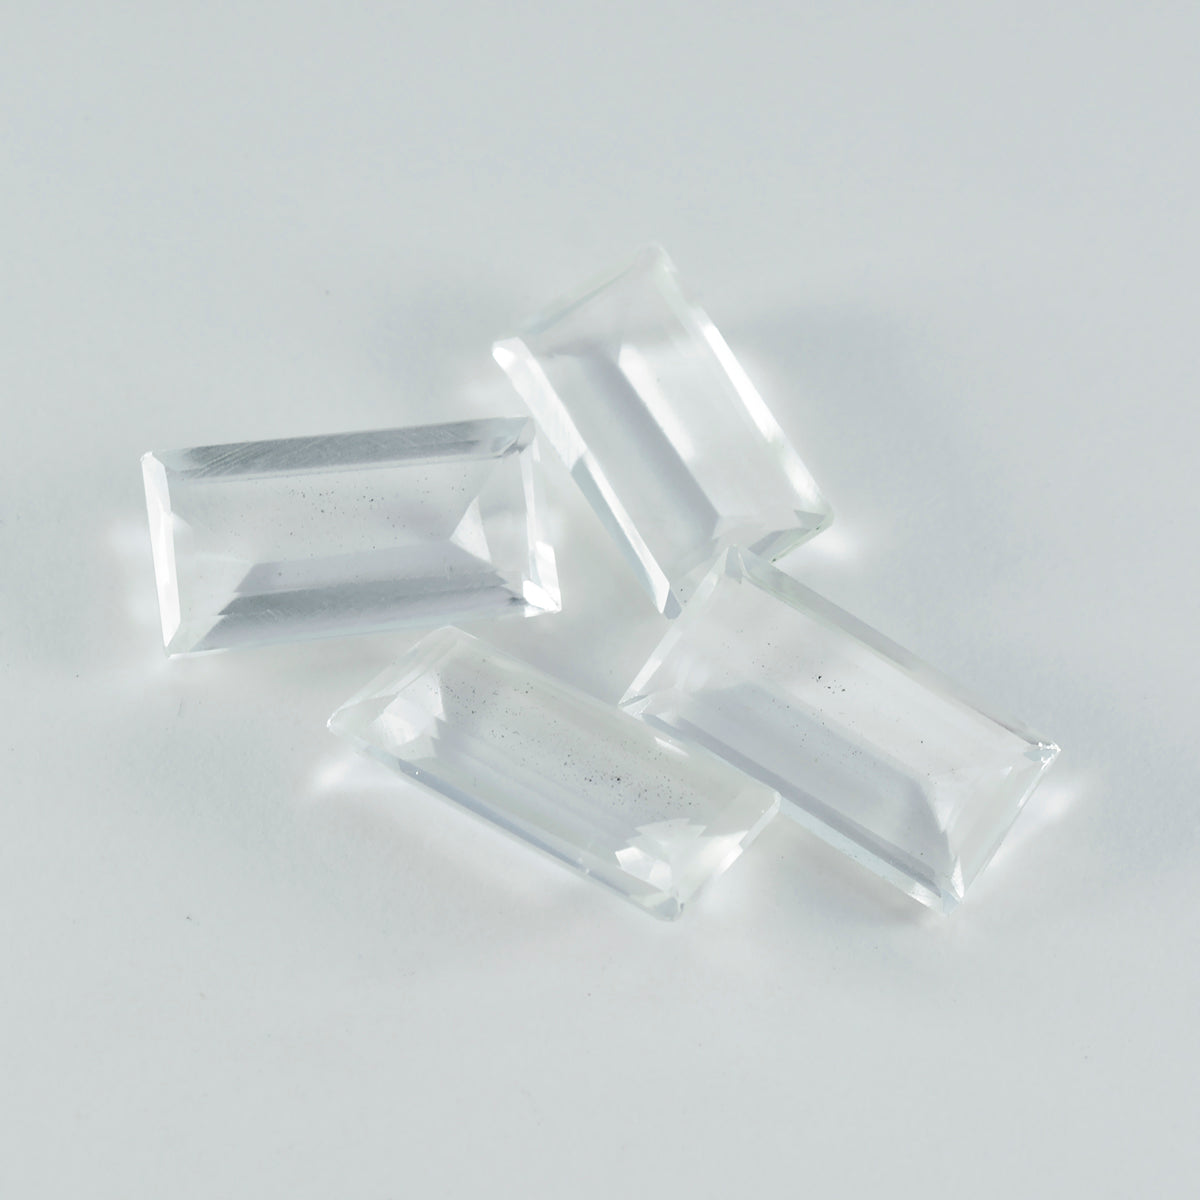 riyogems 1 шт., белый кристалл кварца, граненый 8x16 мм, форма багета, хорошее качество, свободный драгоценный камень